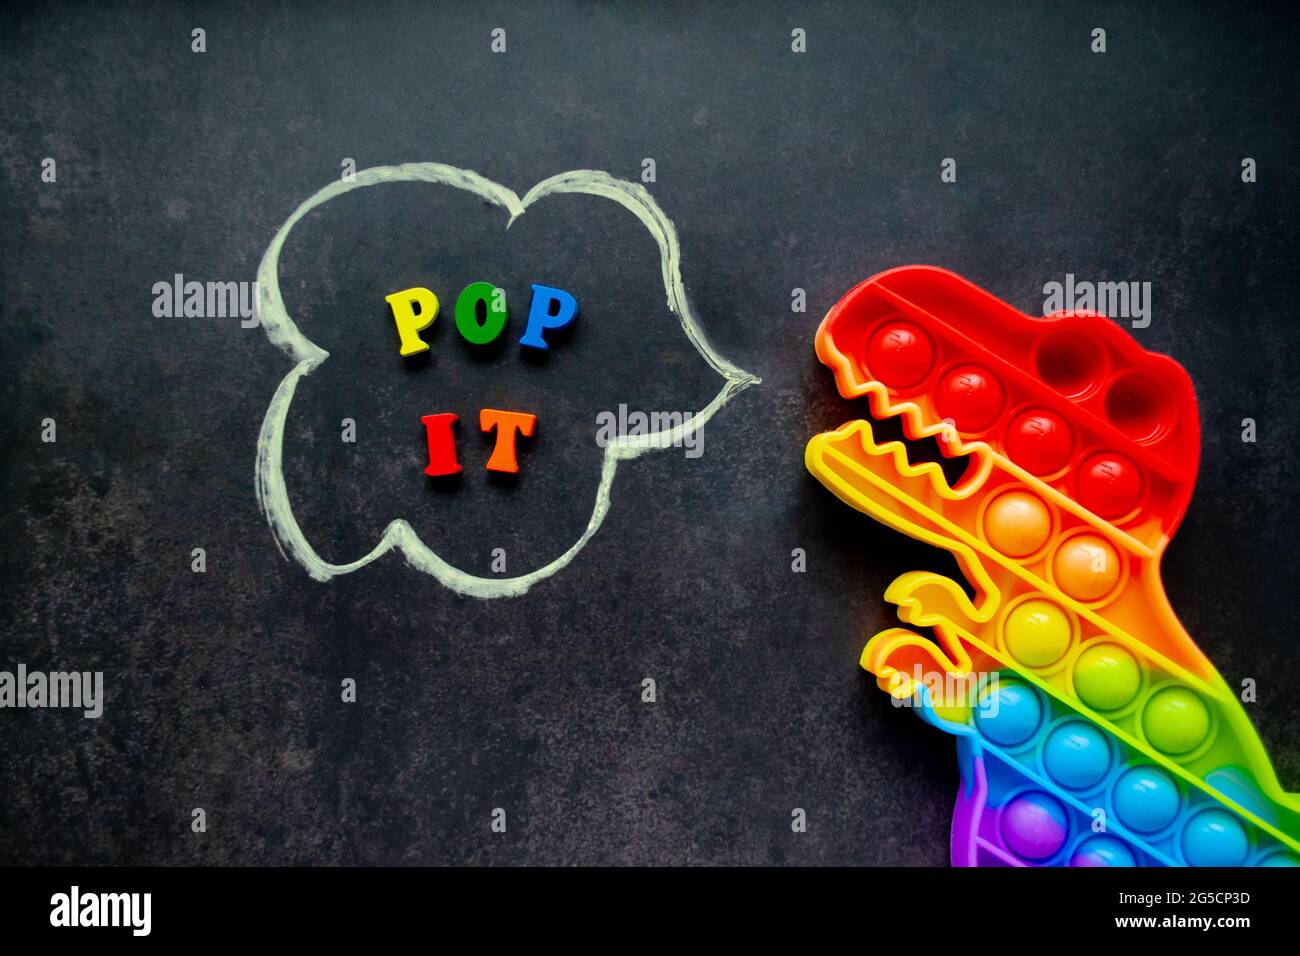 Pop it Dinosaurier Spielzeug Regenbogenfarben auf schwarzem Hintergrund mit bunten Buchstaben und der Inschrift - Pop it in einer Sprechblase. Stockfoto